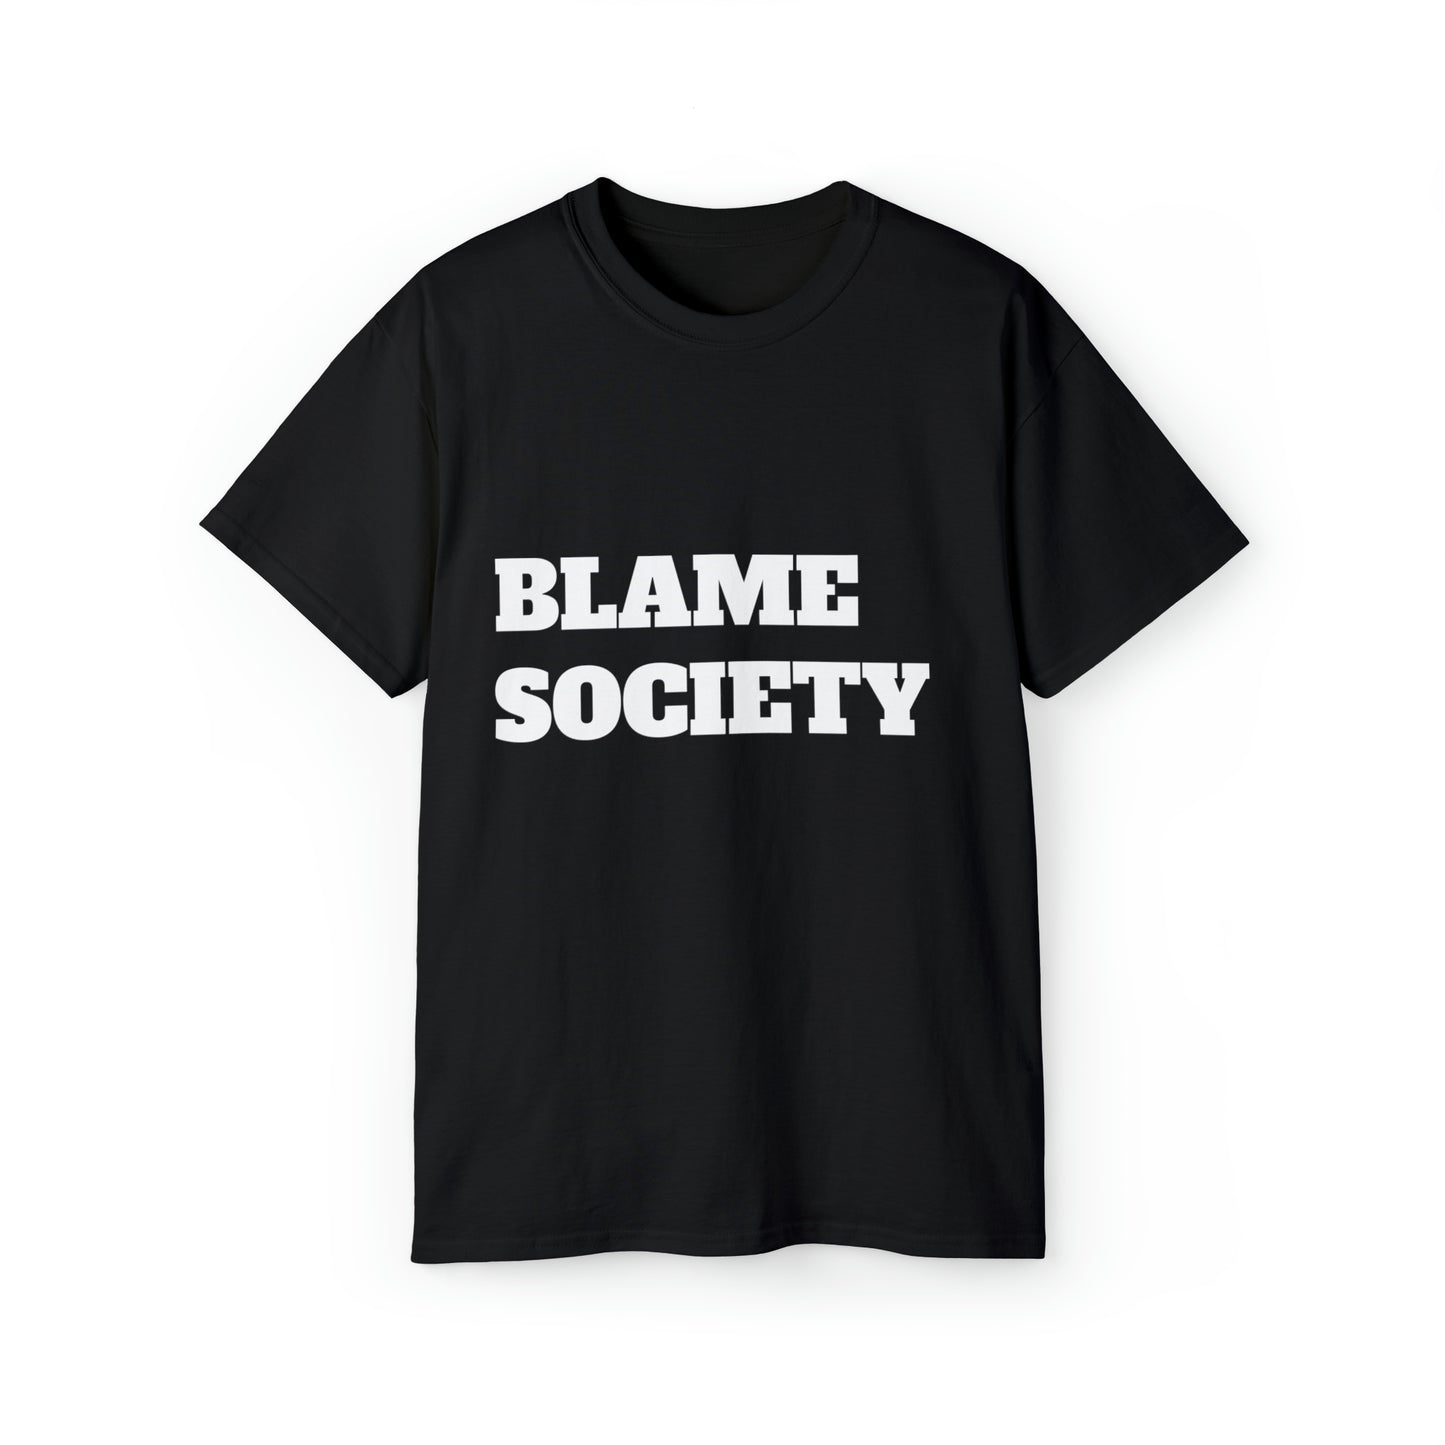 BLAME SOCIETY tshirt